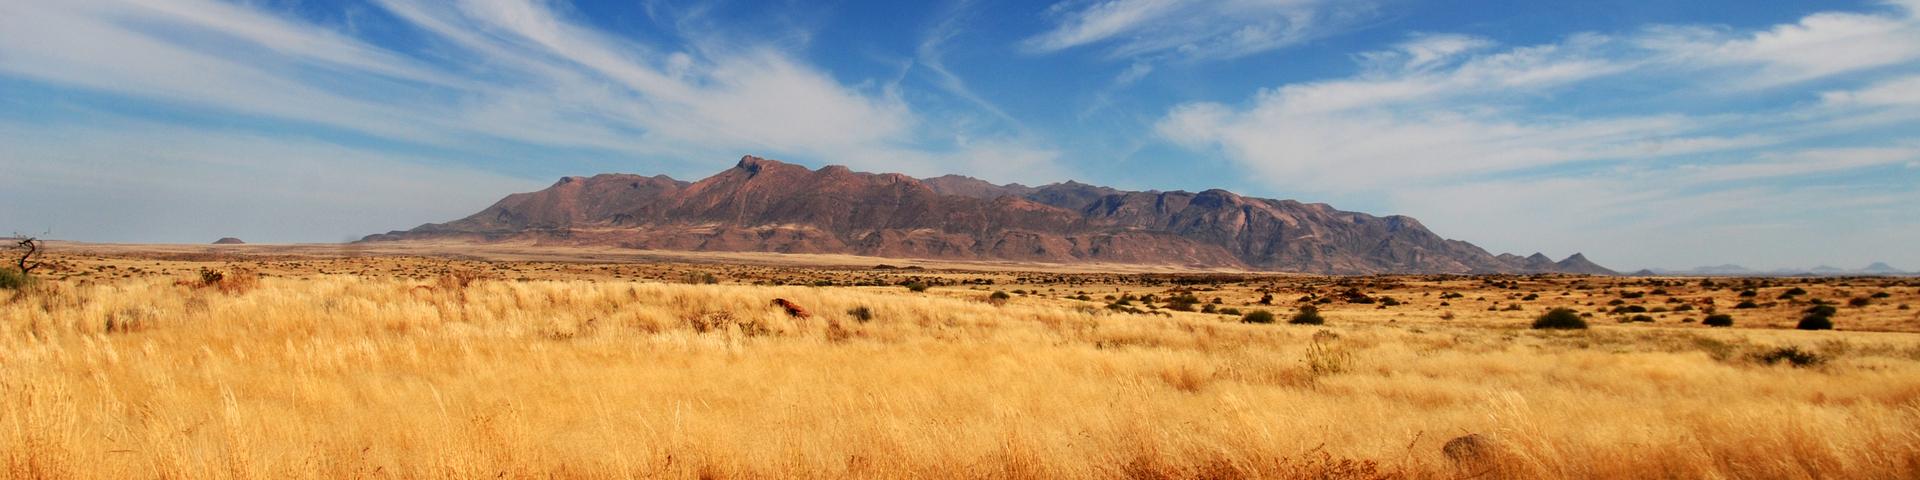 The Brandberg Mountain, Namibia